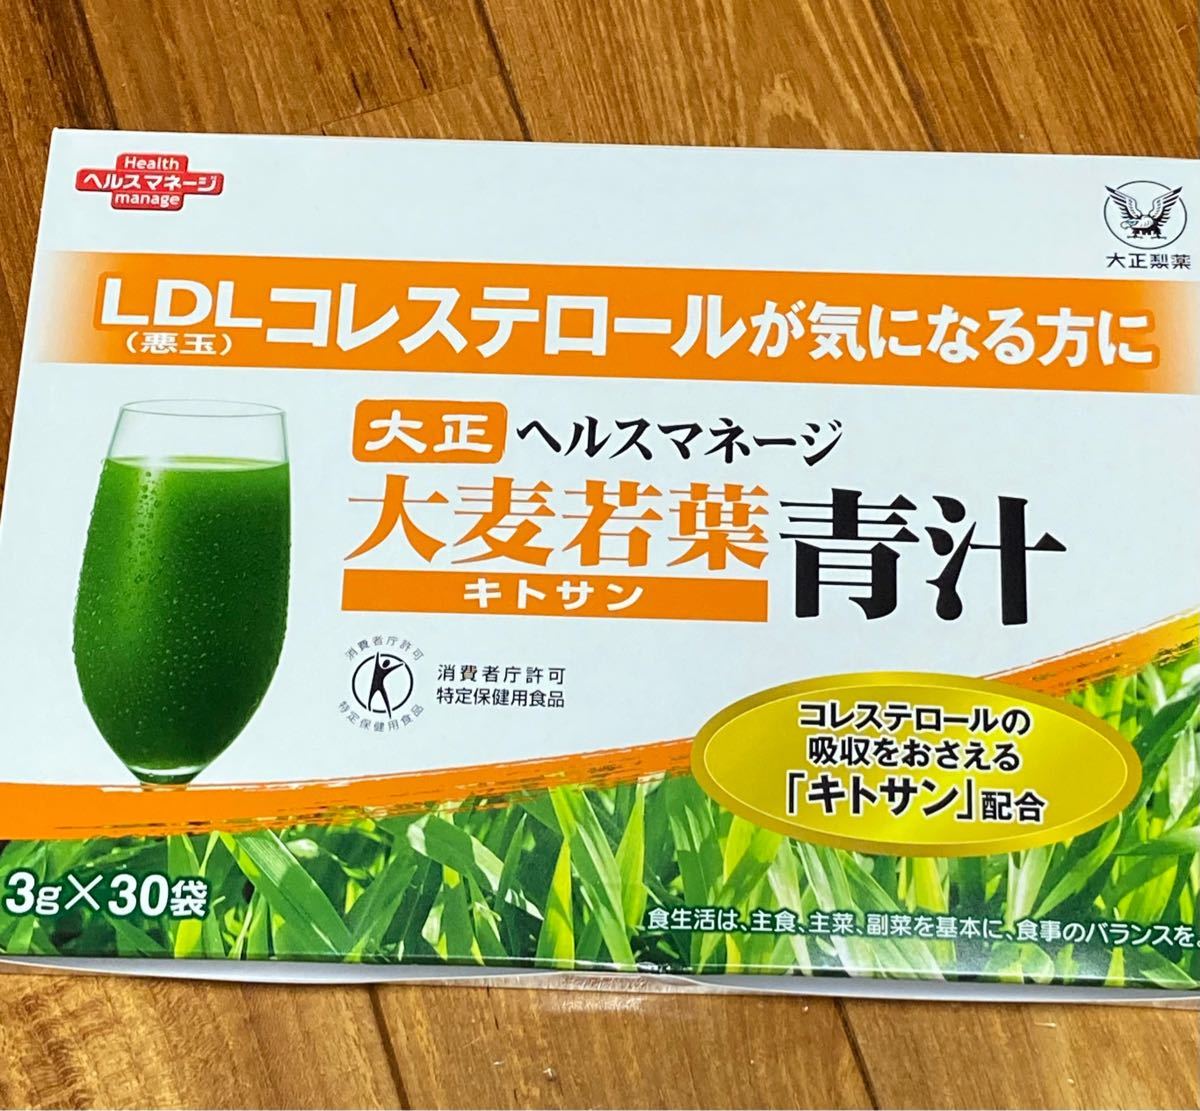 新品送料無料 日本調剤 青汁と赤汁PREMIUM 30包入 各1箱セット